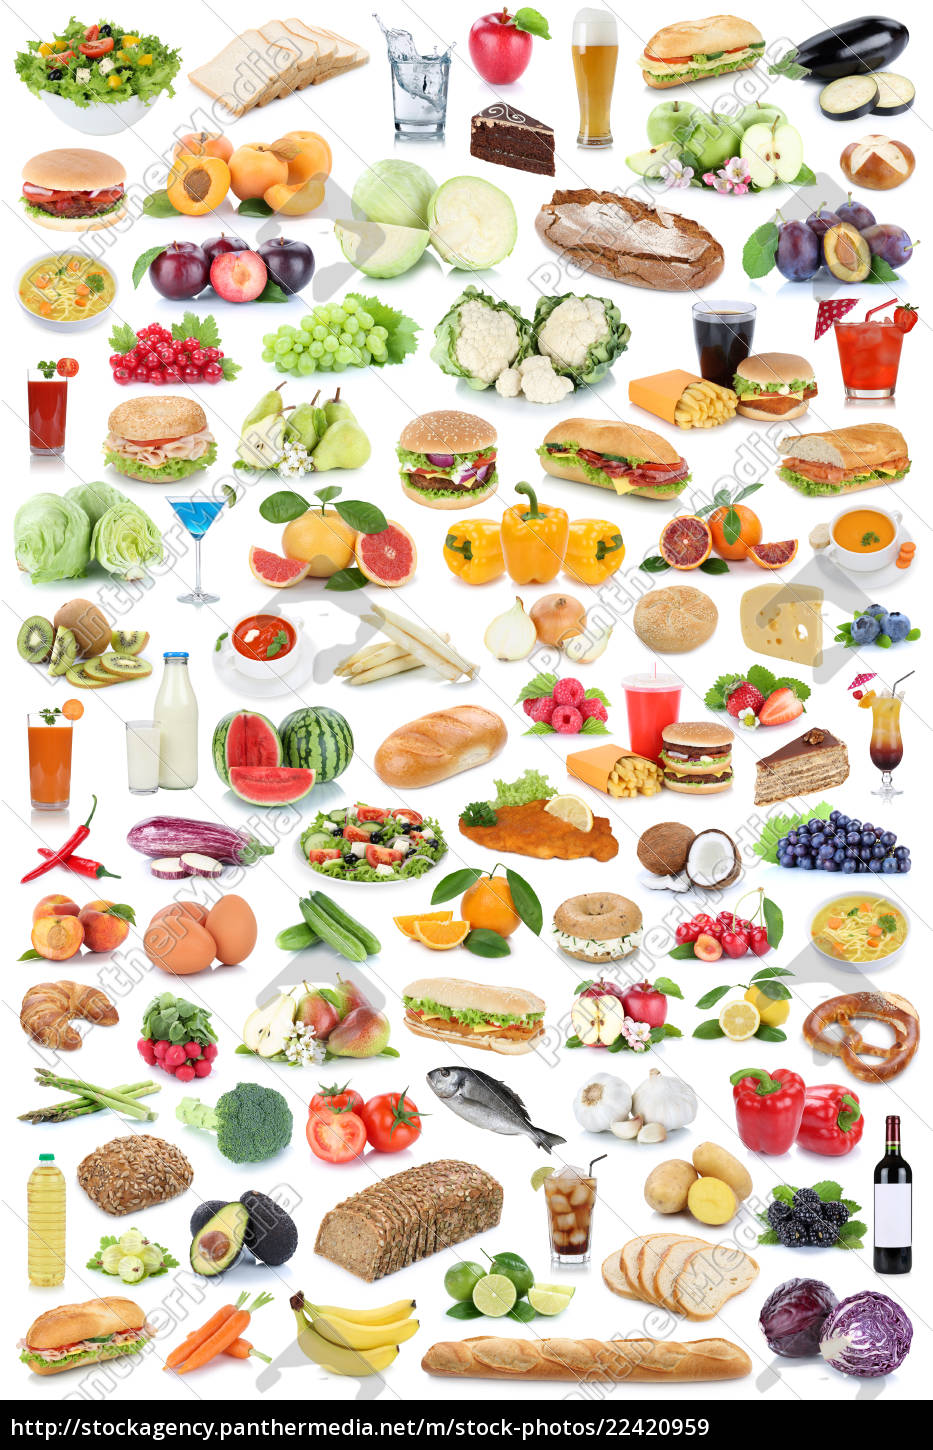 sammlung collage essen und trinken gesunde ernährung